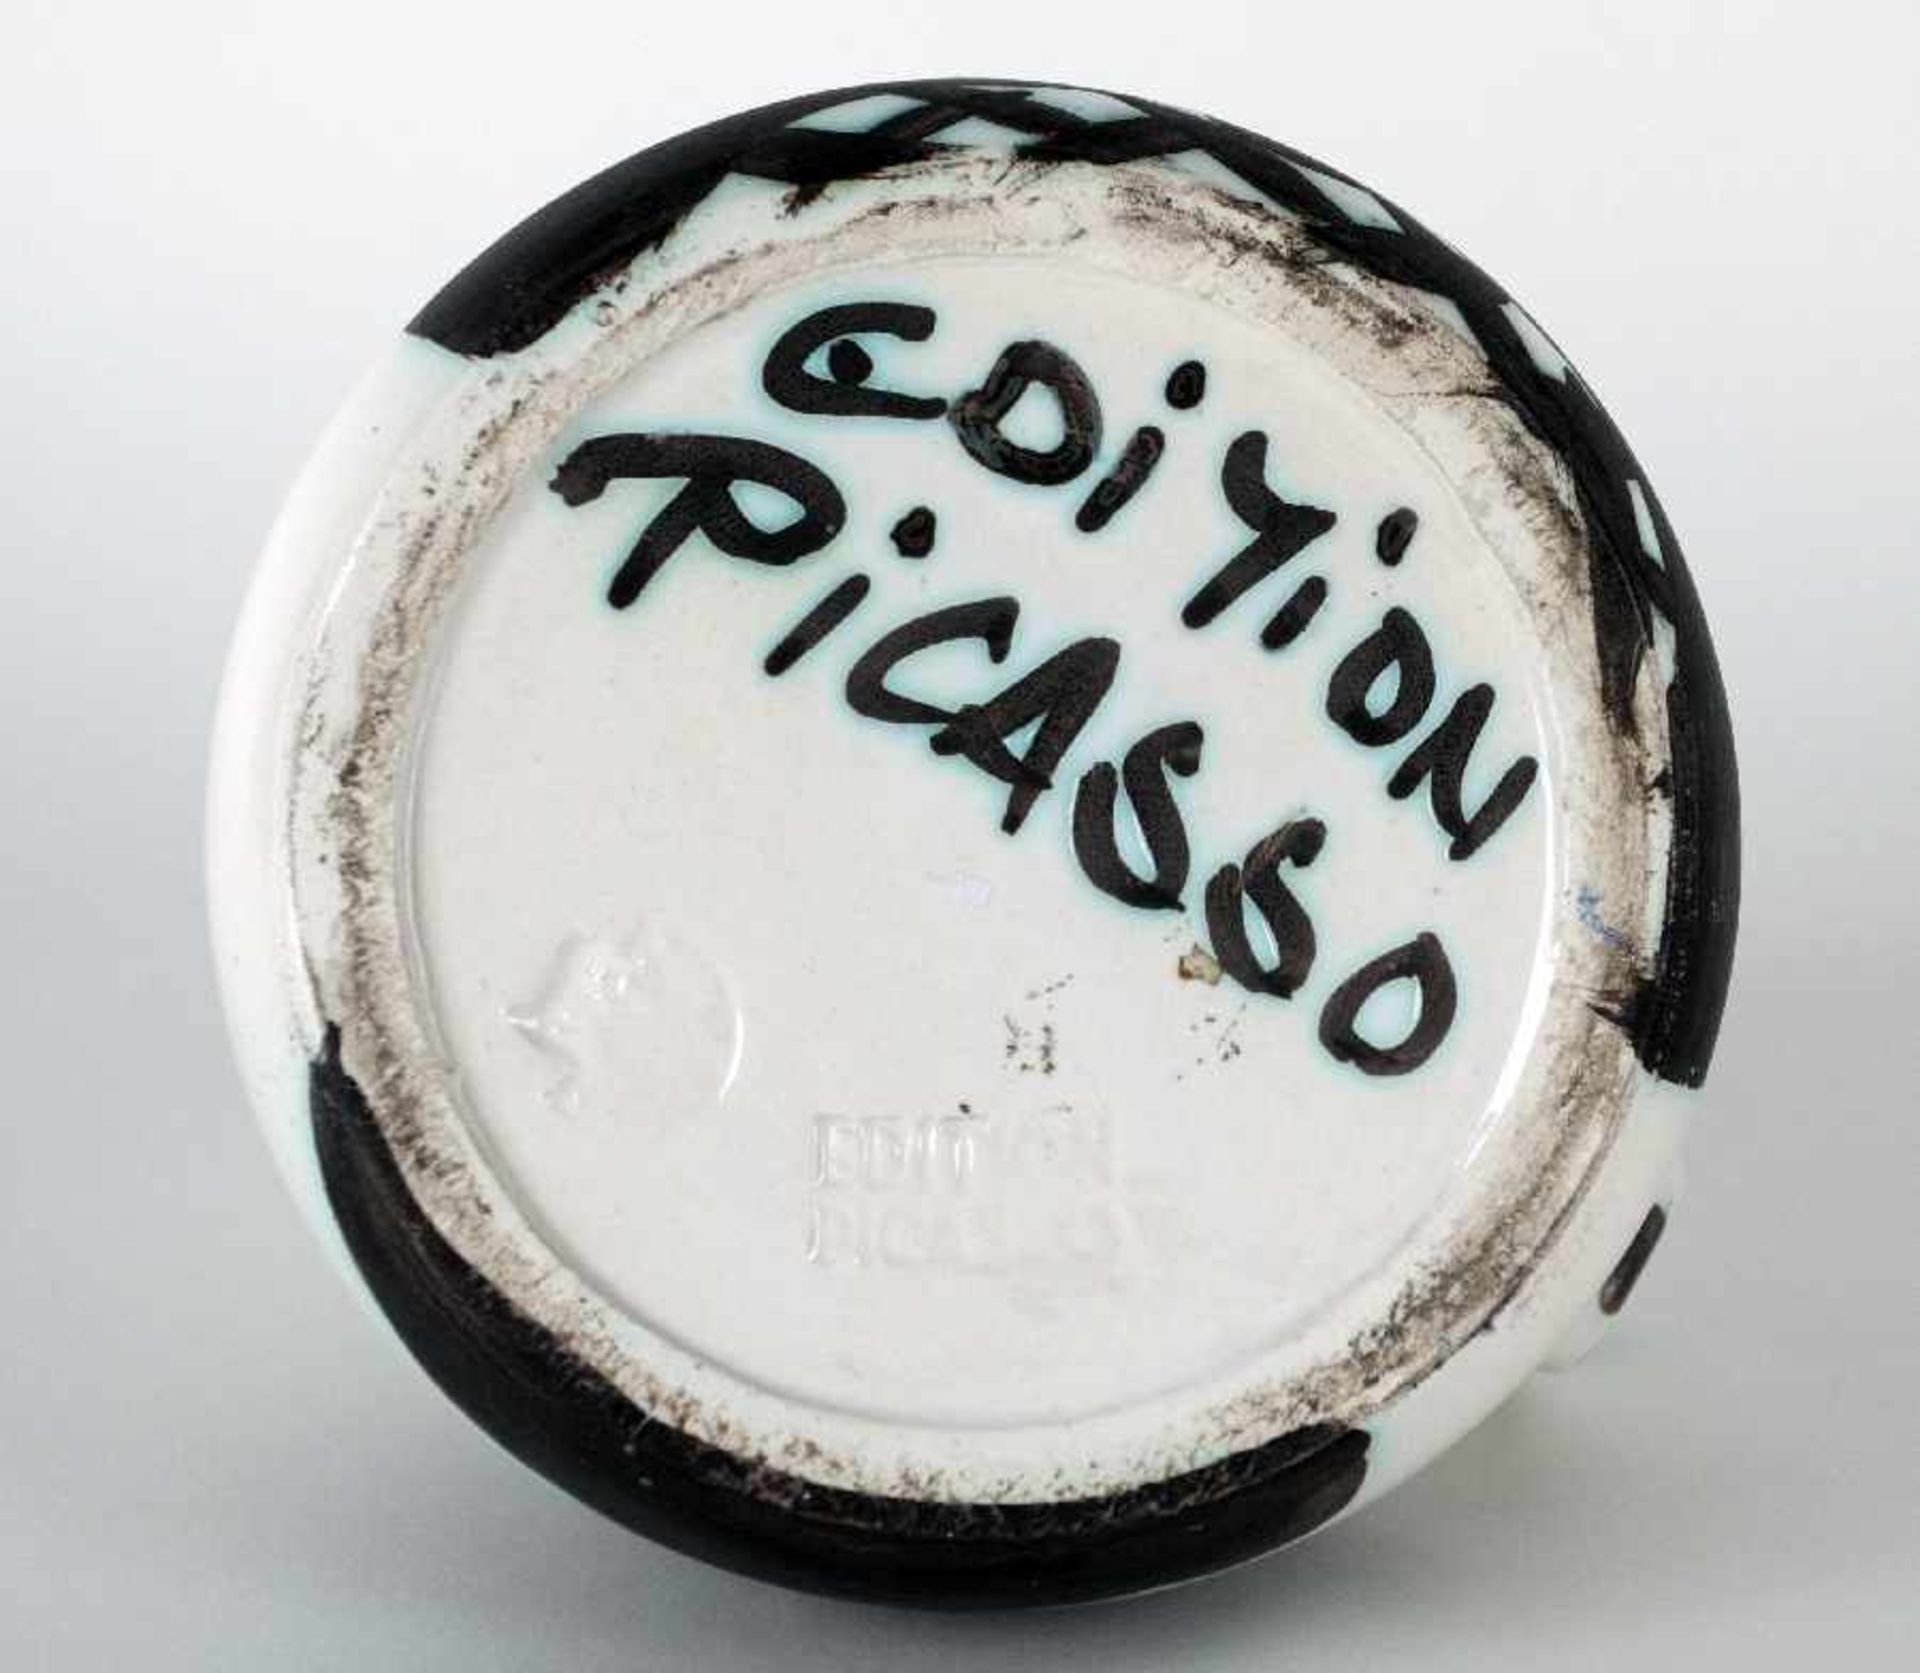 Pablo Picasso1881 Malaga - 1973 MouginsPichet tourné (Henkelkanne)Keramik, gebrannt und bemalt, - Image 3 of 3